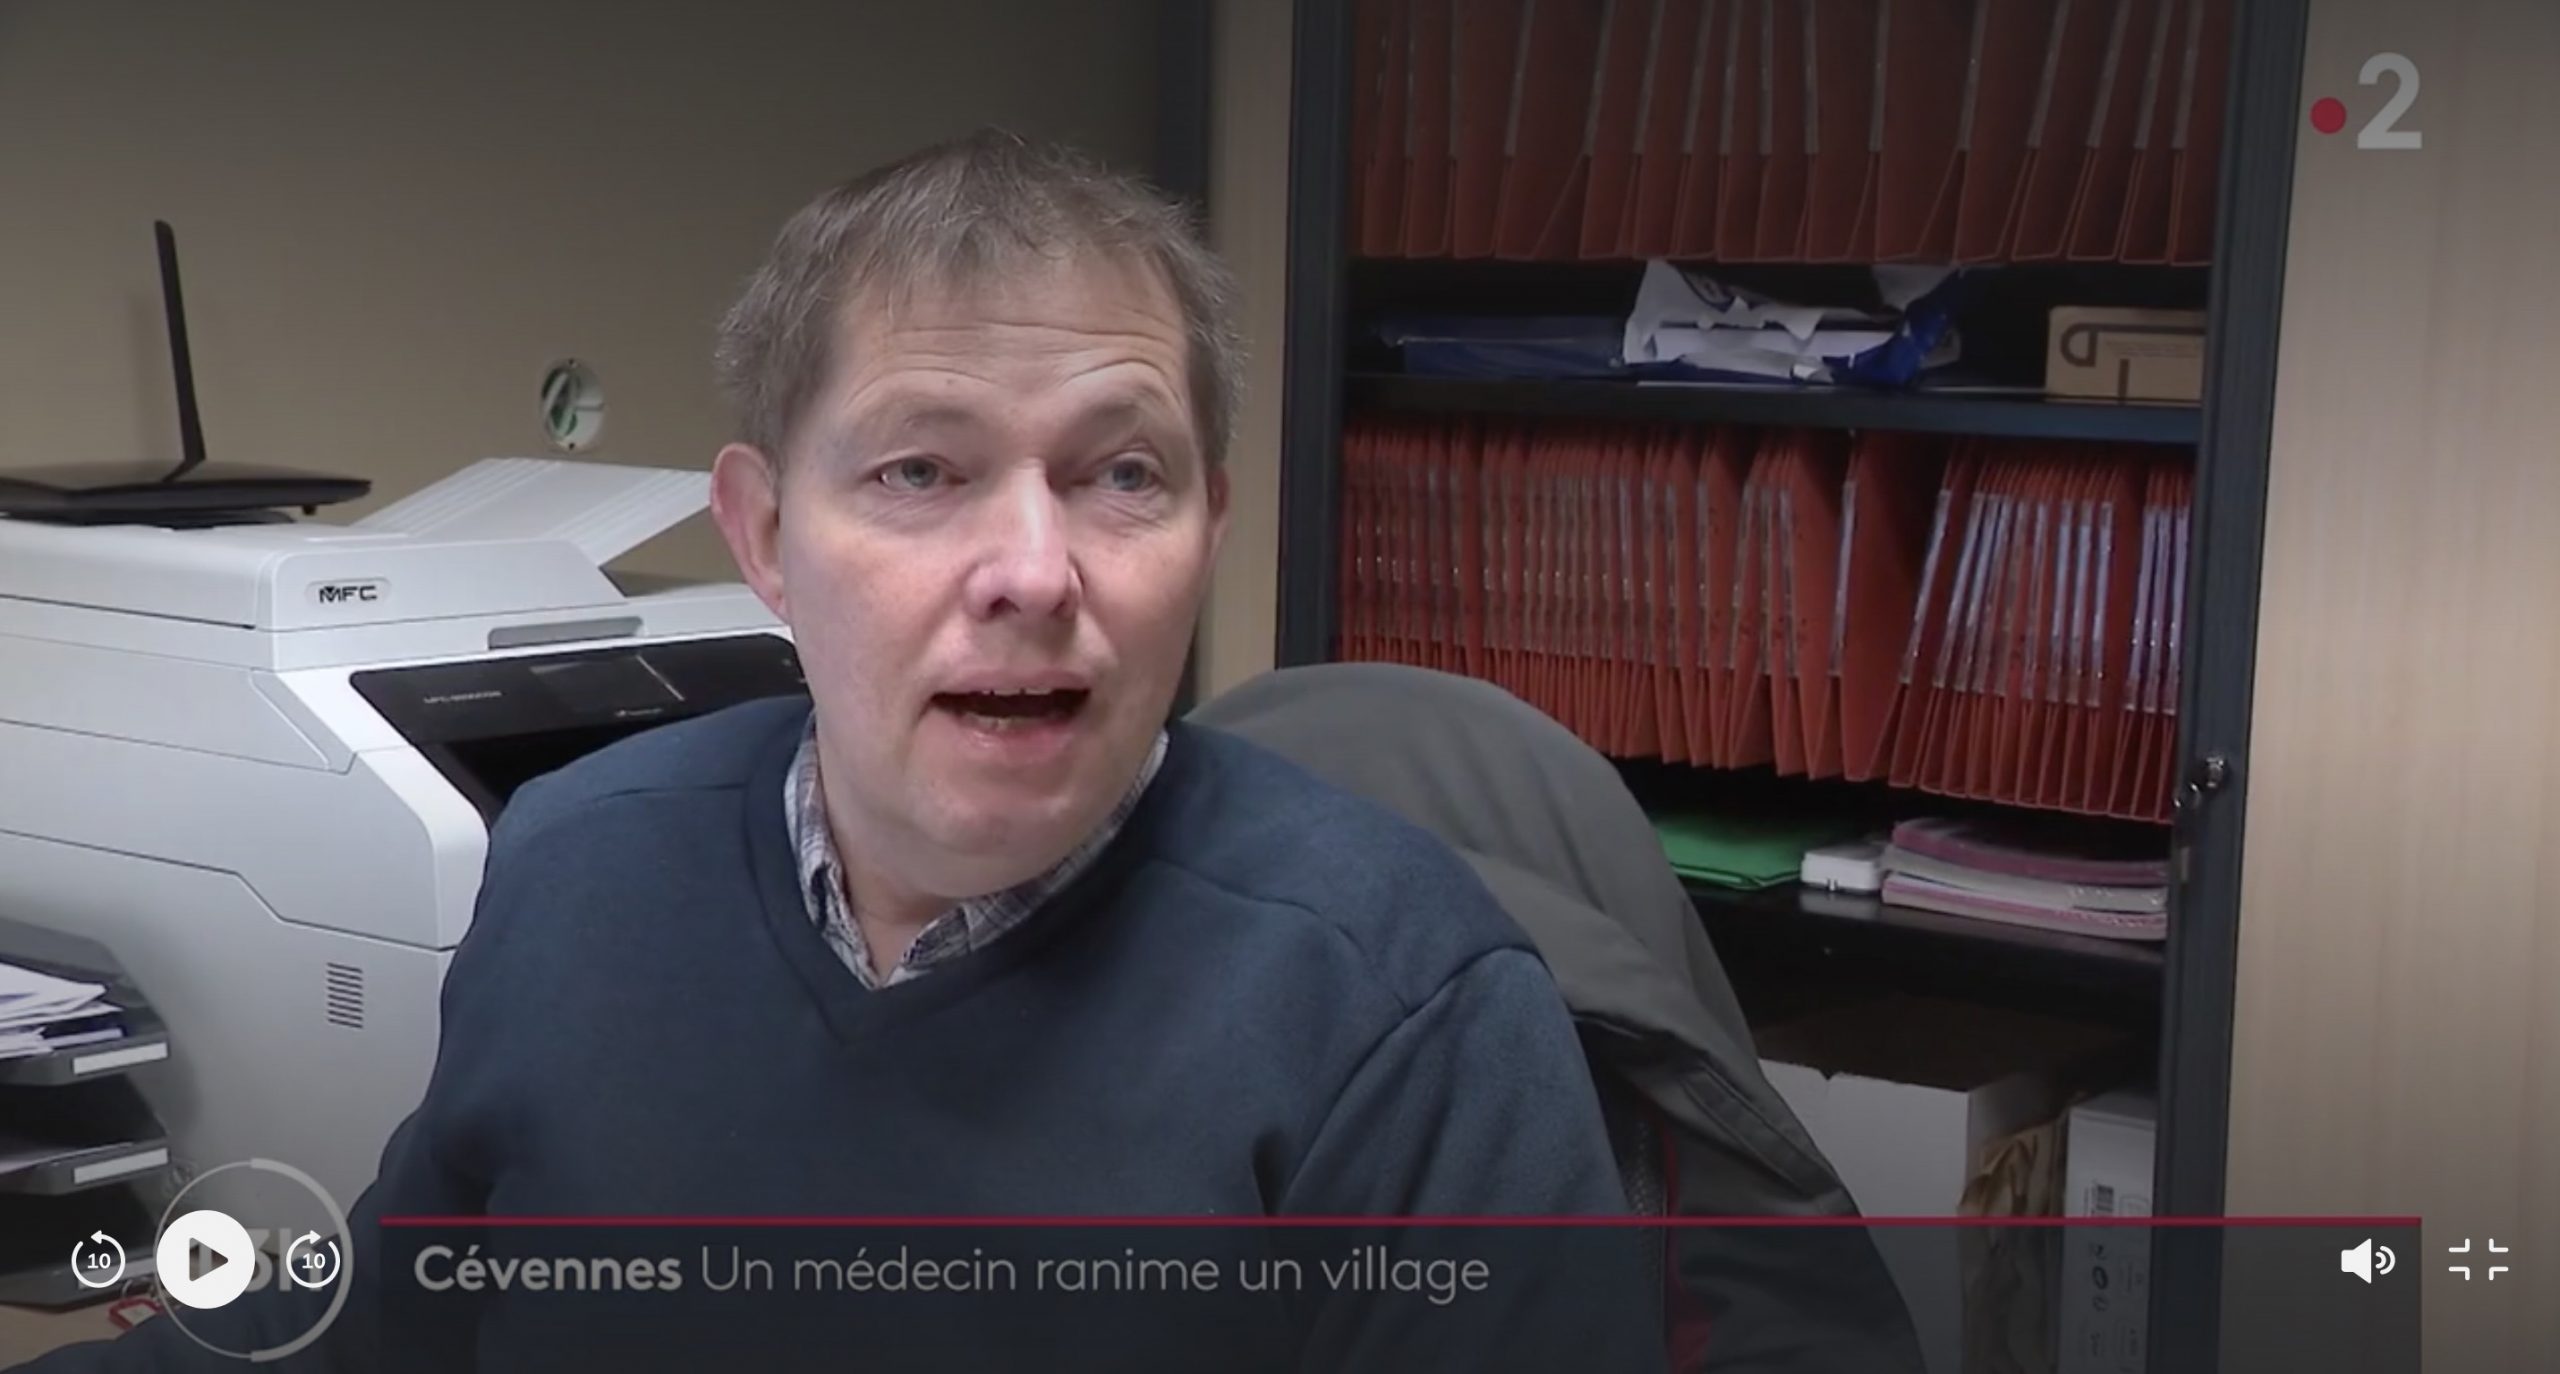 Le village de Gagnières réanimé grâce à un médecin